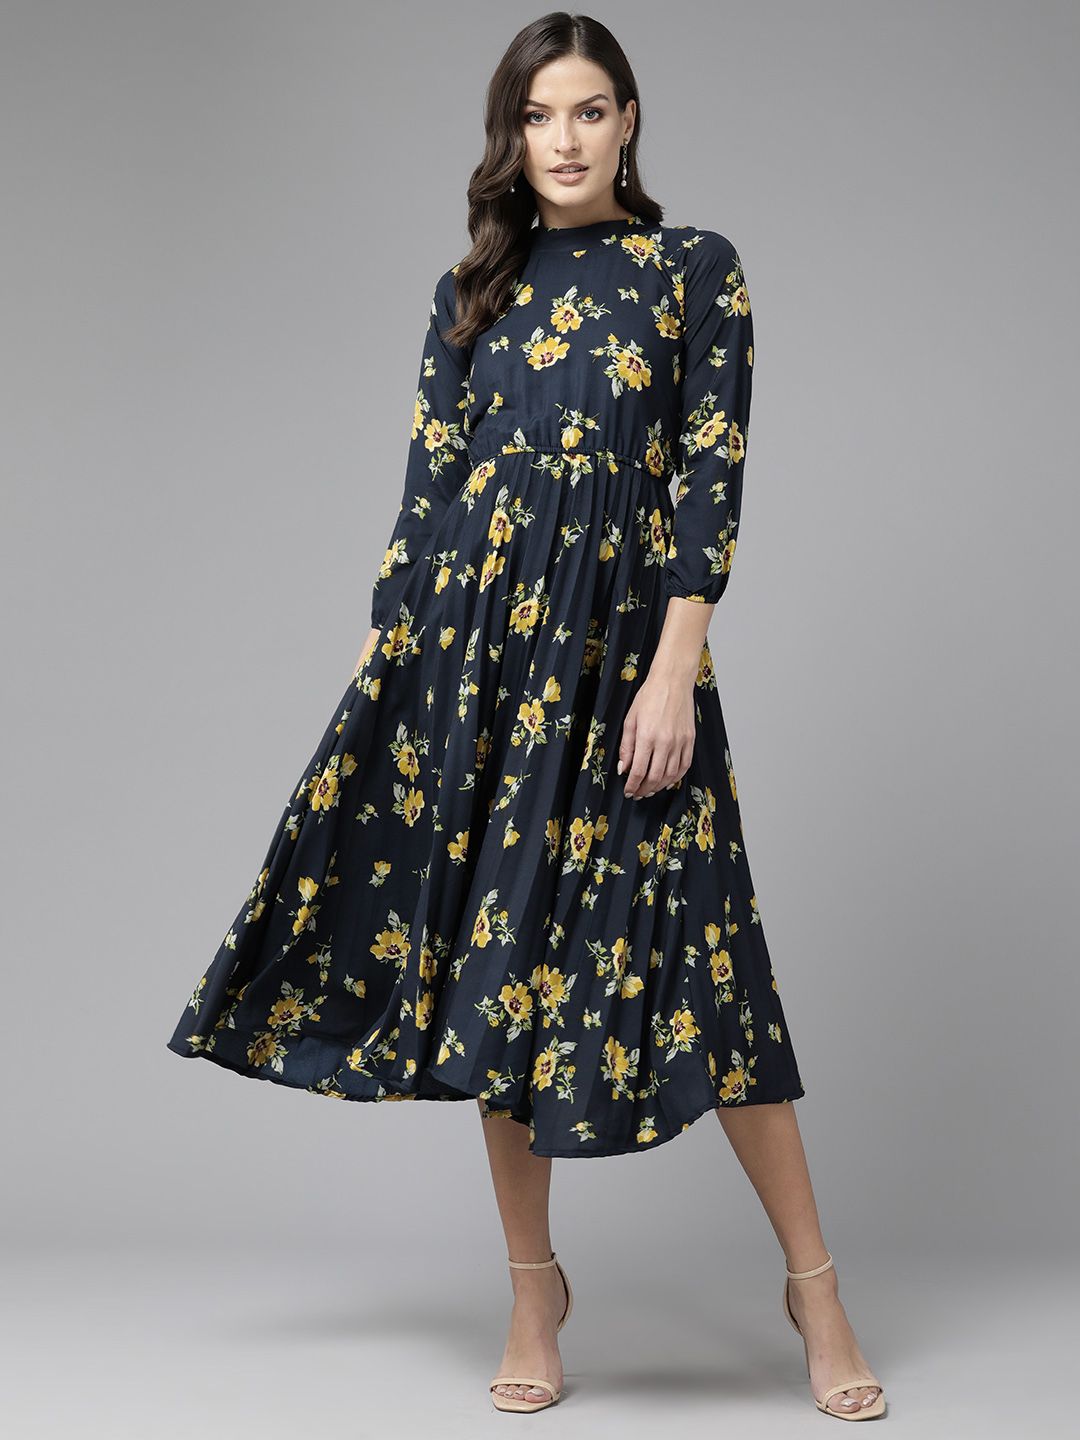 Aarika Floral Print Georgette A-Line Midi Dress Price in India